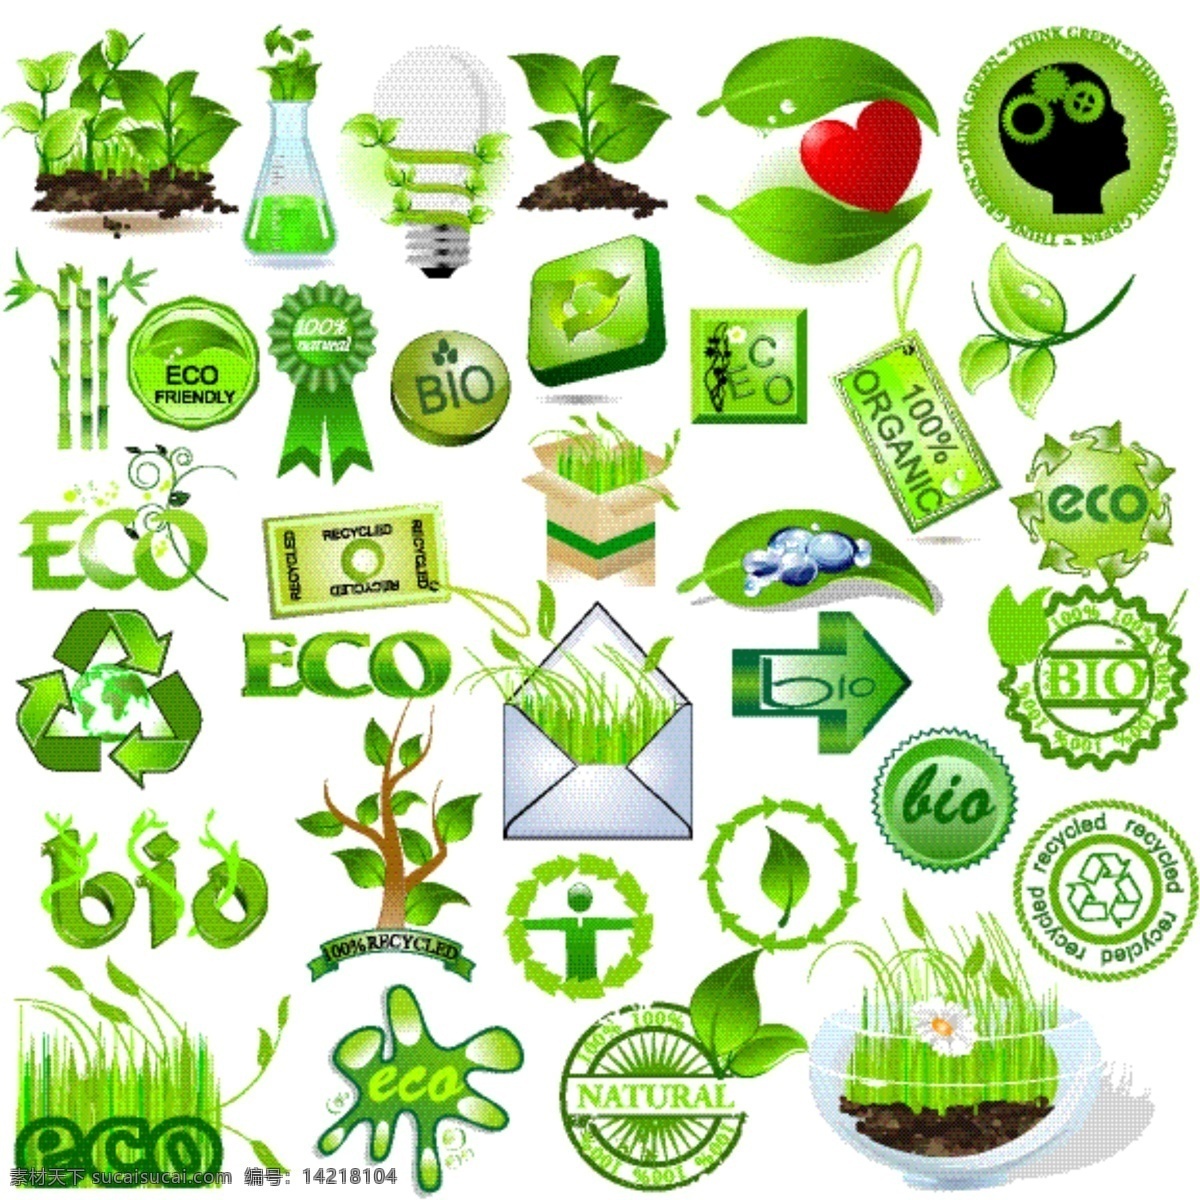 绿色生活 环保 图标 矢量 大脑 化学容器 环保图标 箭头 绿叶 树苗 树叶 叶子 竹子